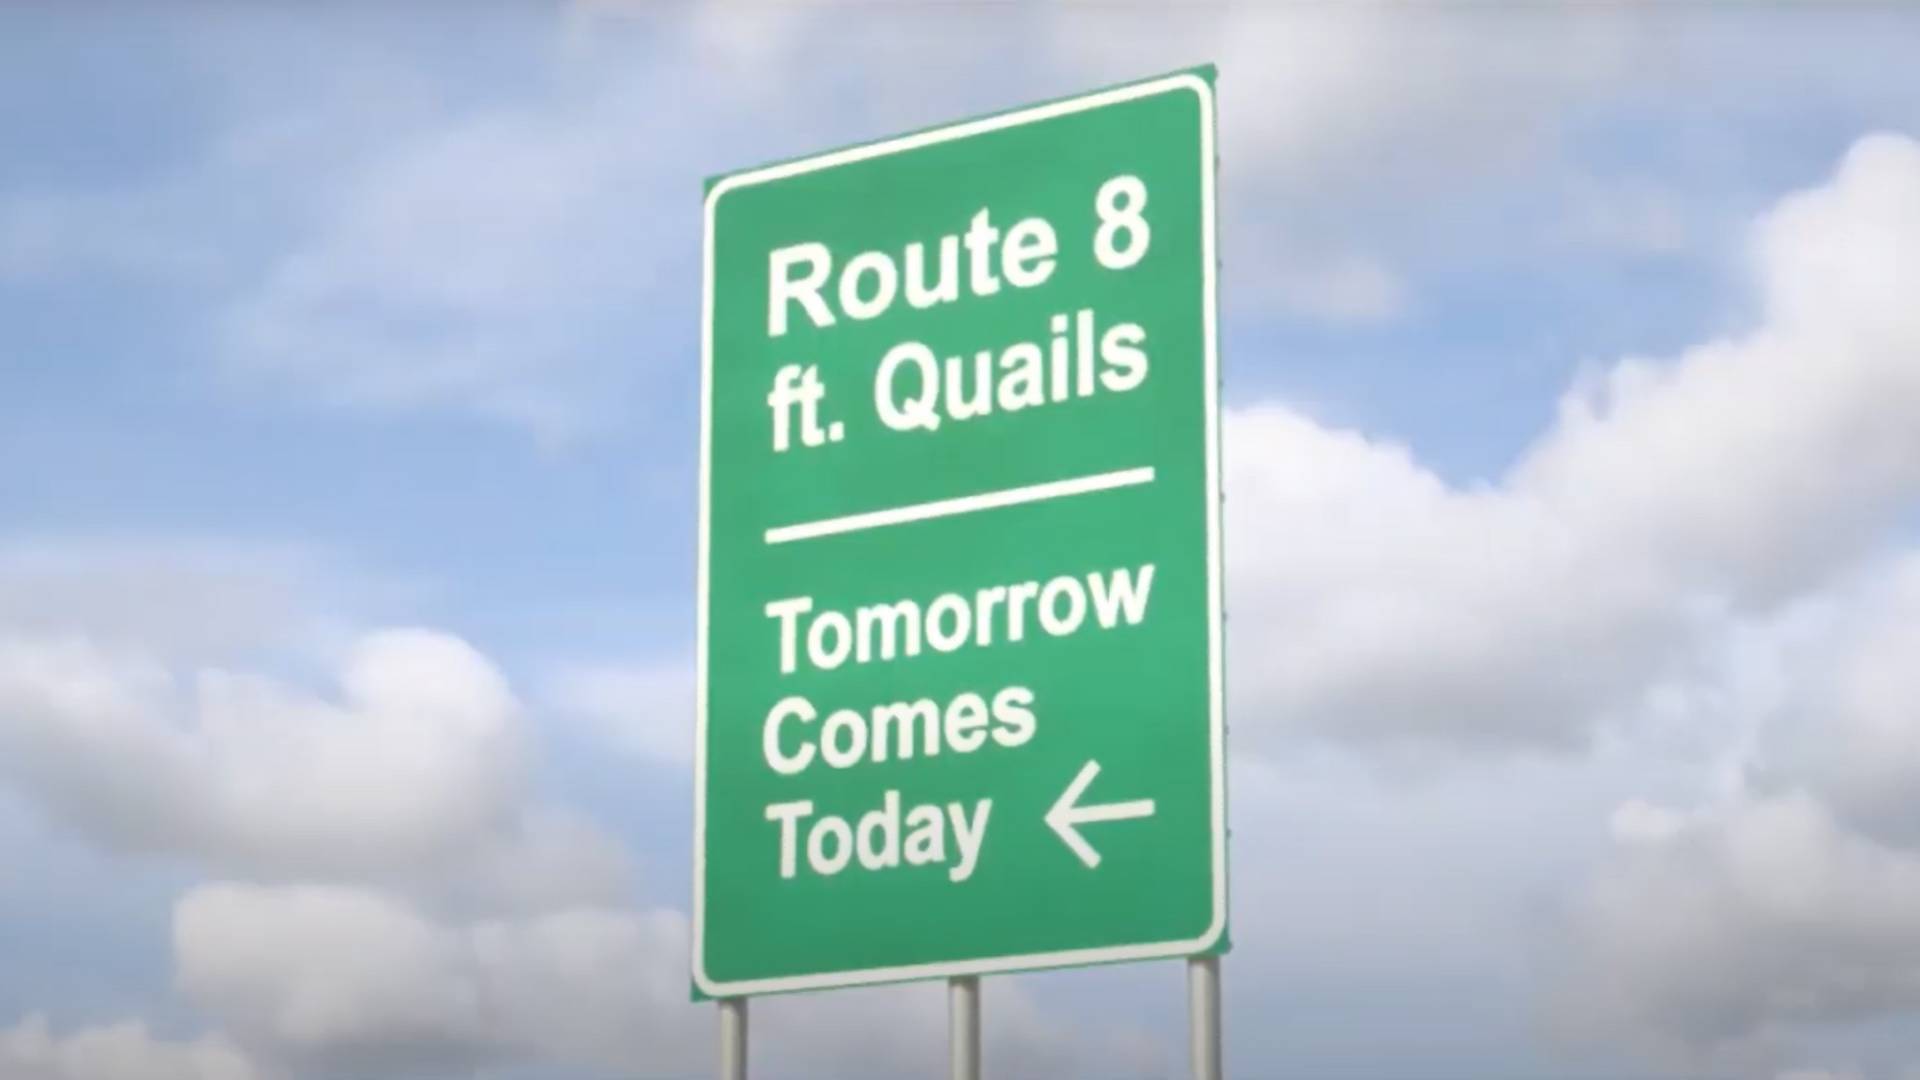 Agyhuzalozó animációs klip készült Route 8, azaz Szilvió első nagylemezének teaser dalához